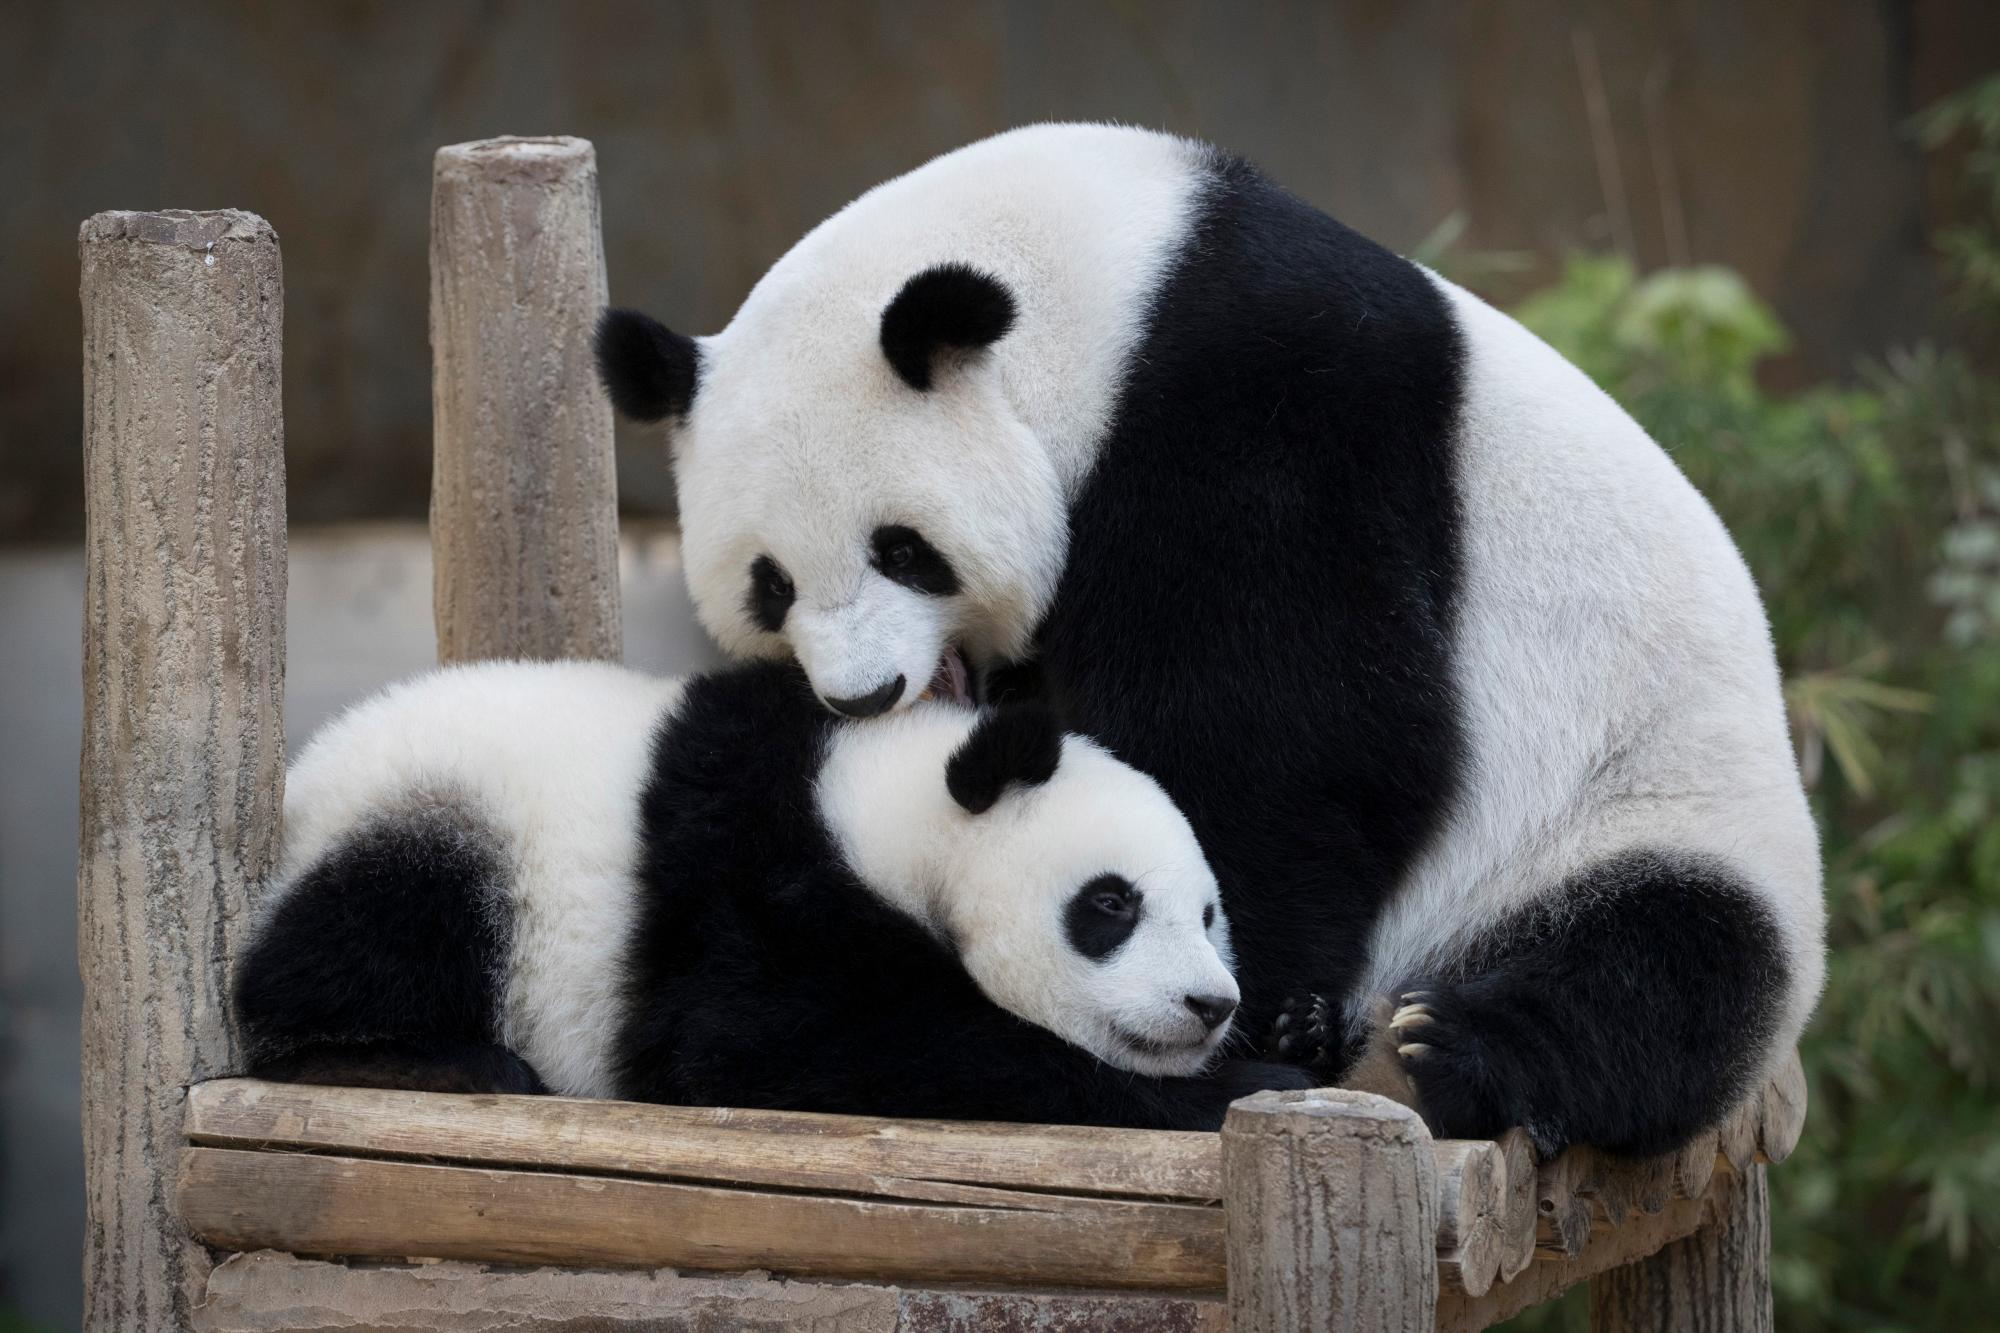 El panda gigante hembra de un año (sin nombre) cumple su primer cumpleaños con su madre Liang Liang, a la derecha, en el Zoológico Nacional de Kuala Lumpur.